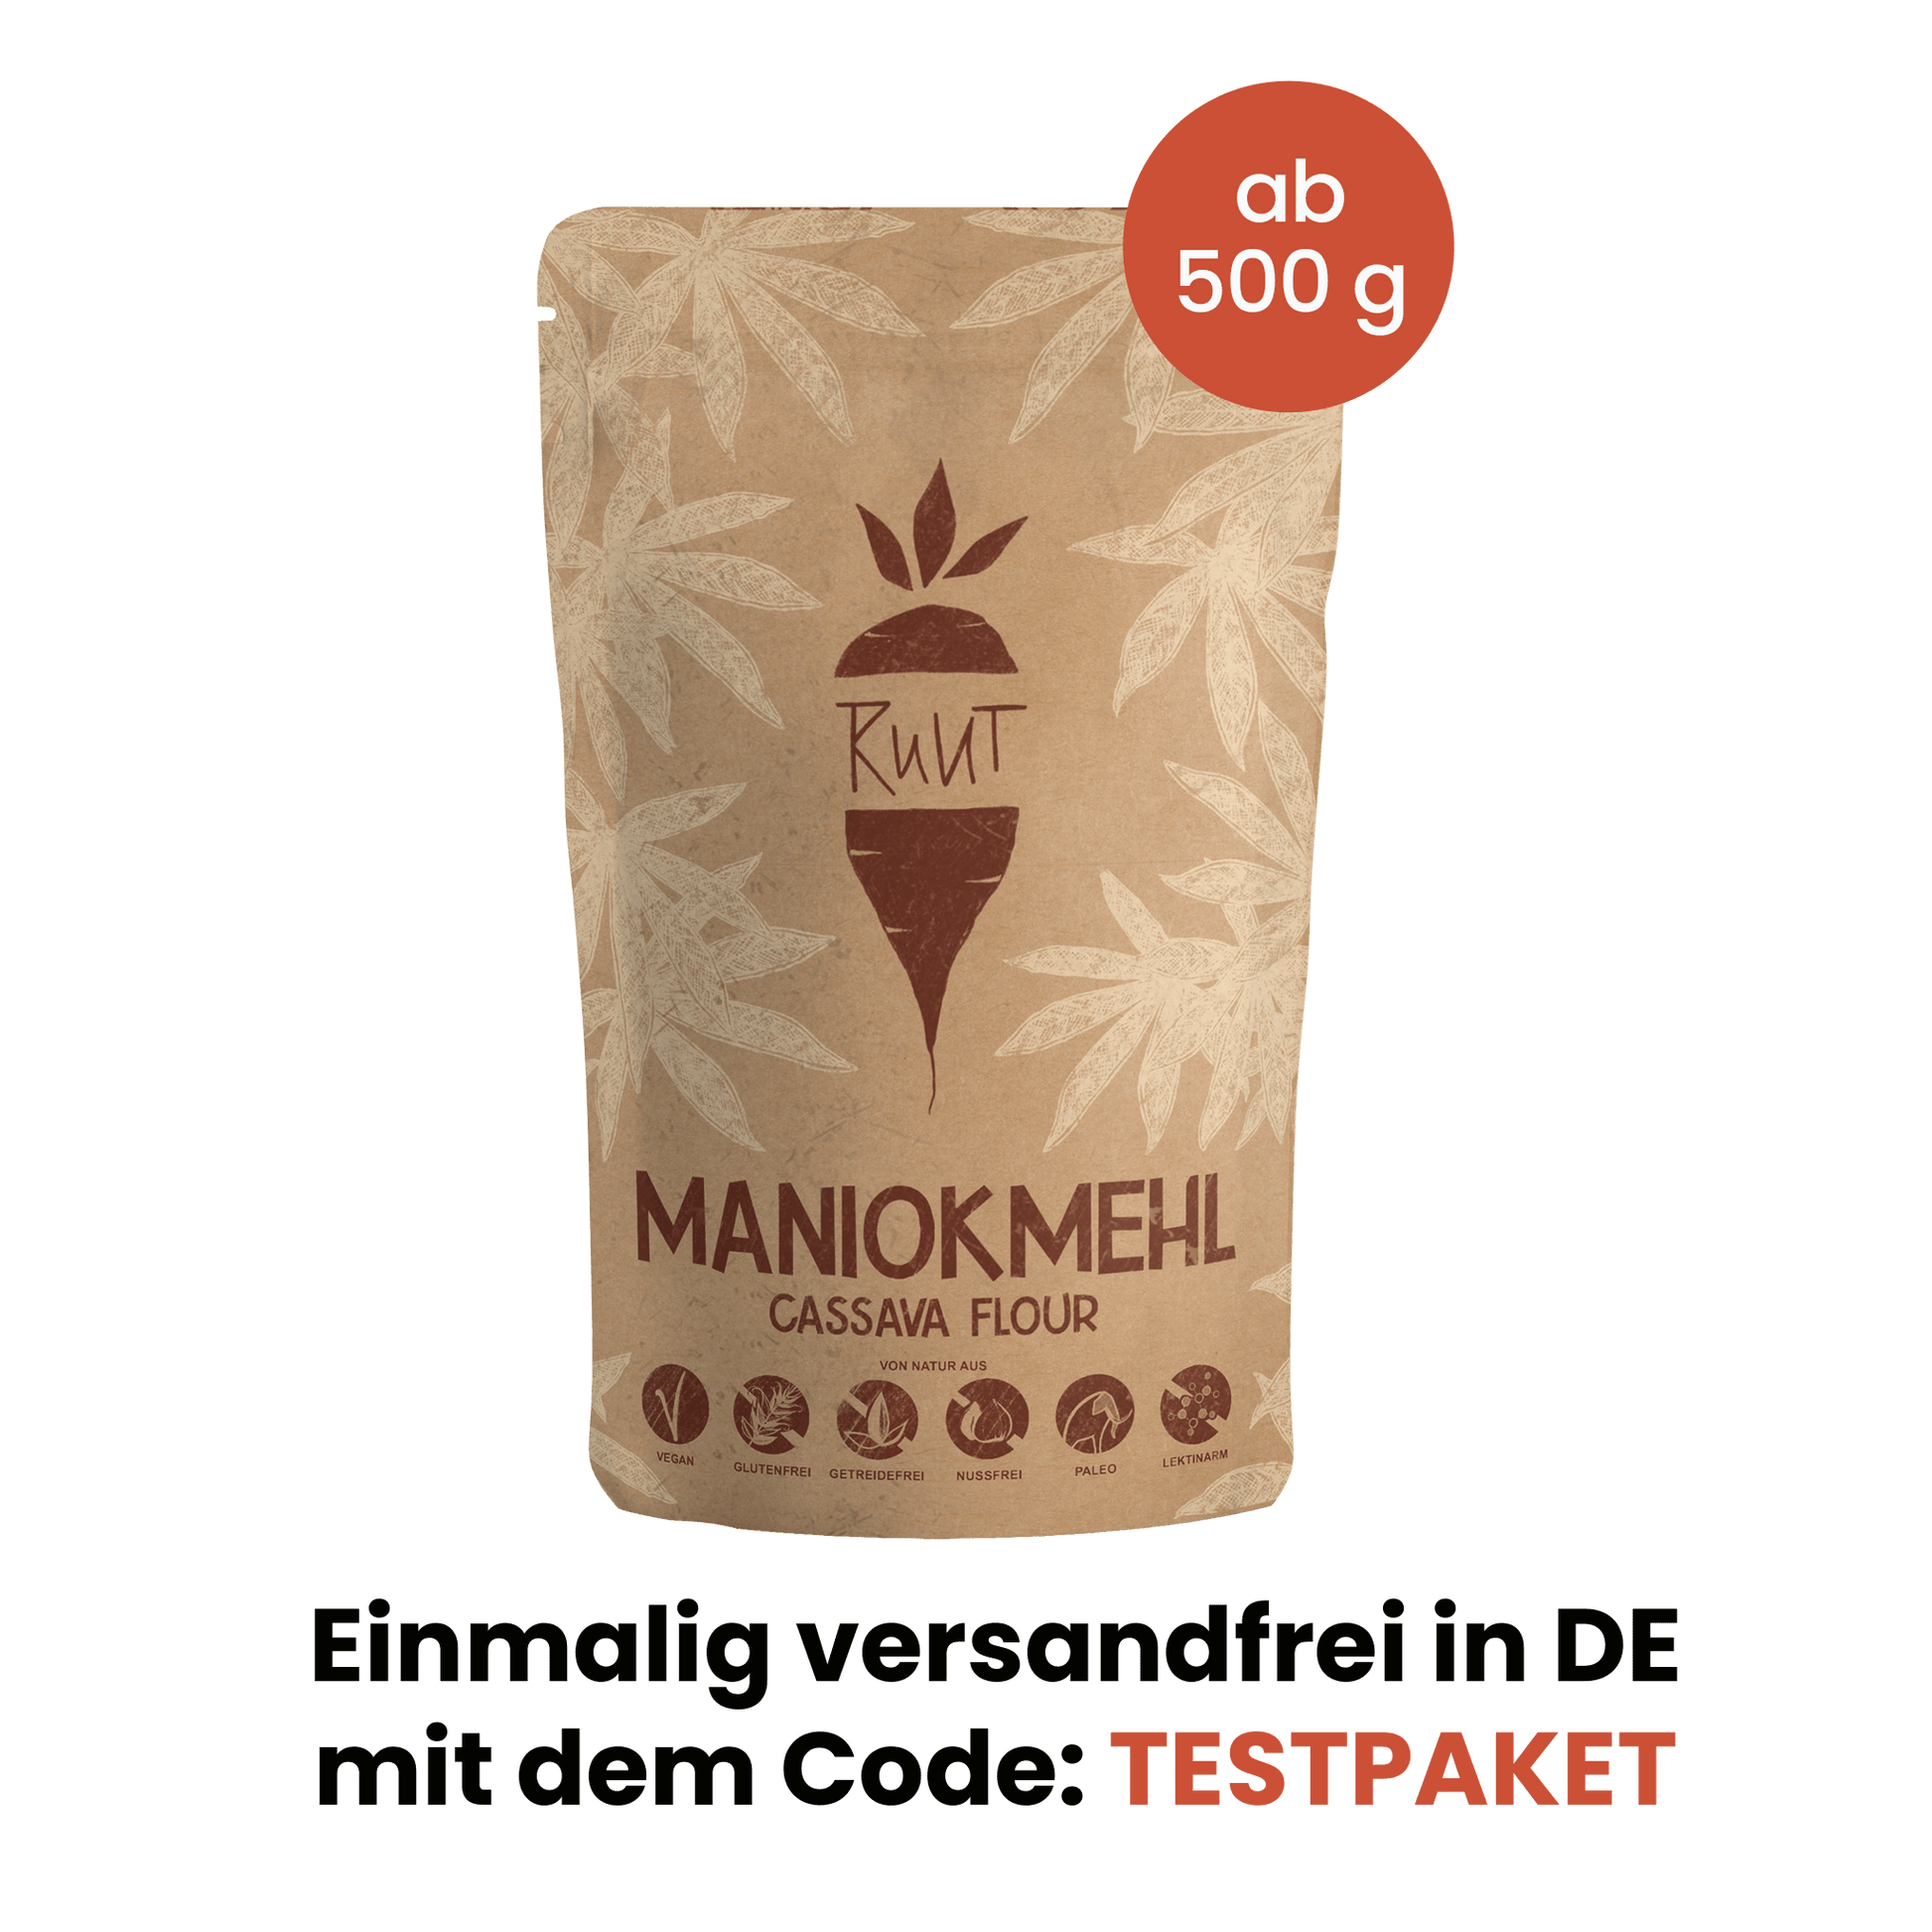 Das Maniokmehl Testpaket für alle die glutenfreies Maniokmehl jetzt ausprobieren wollen